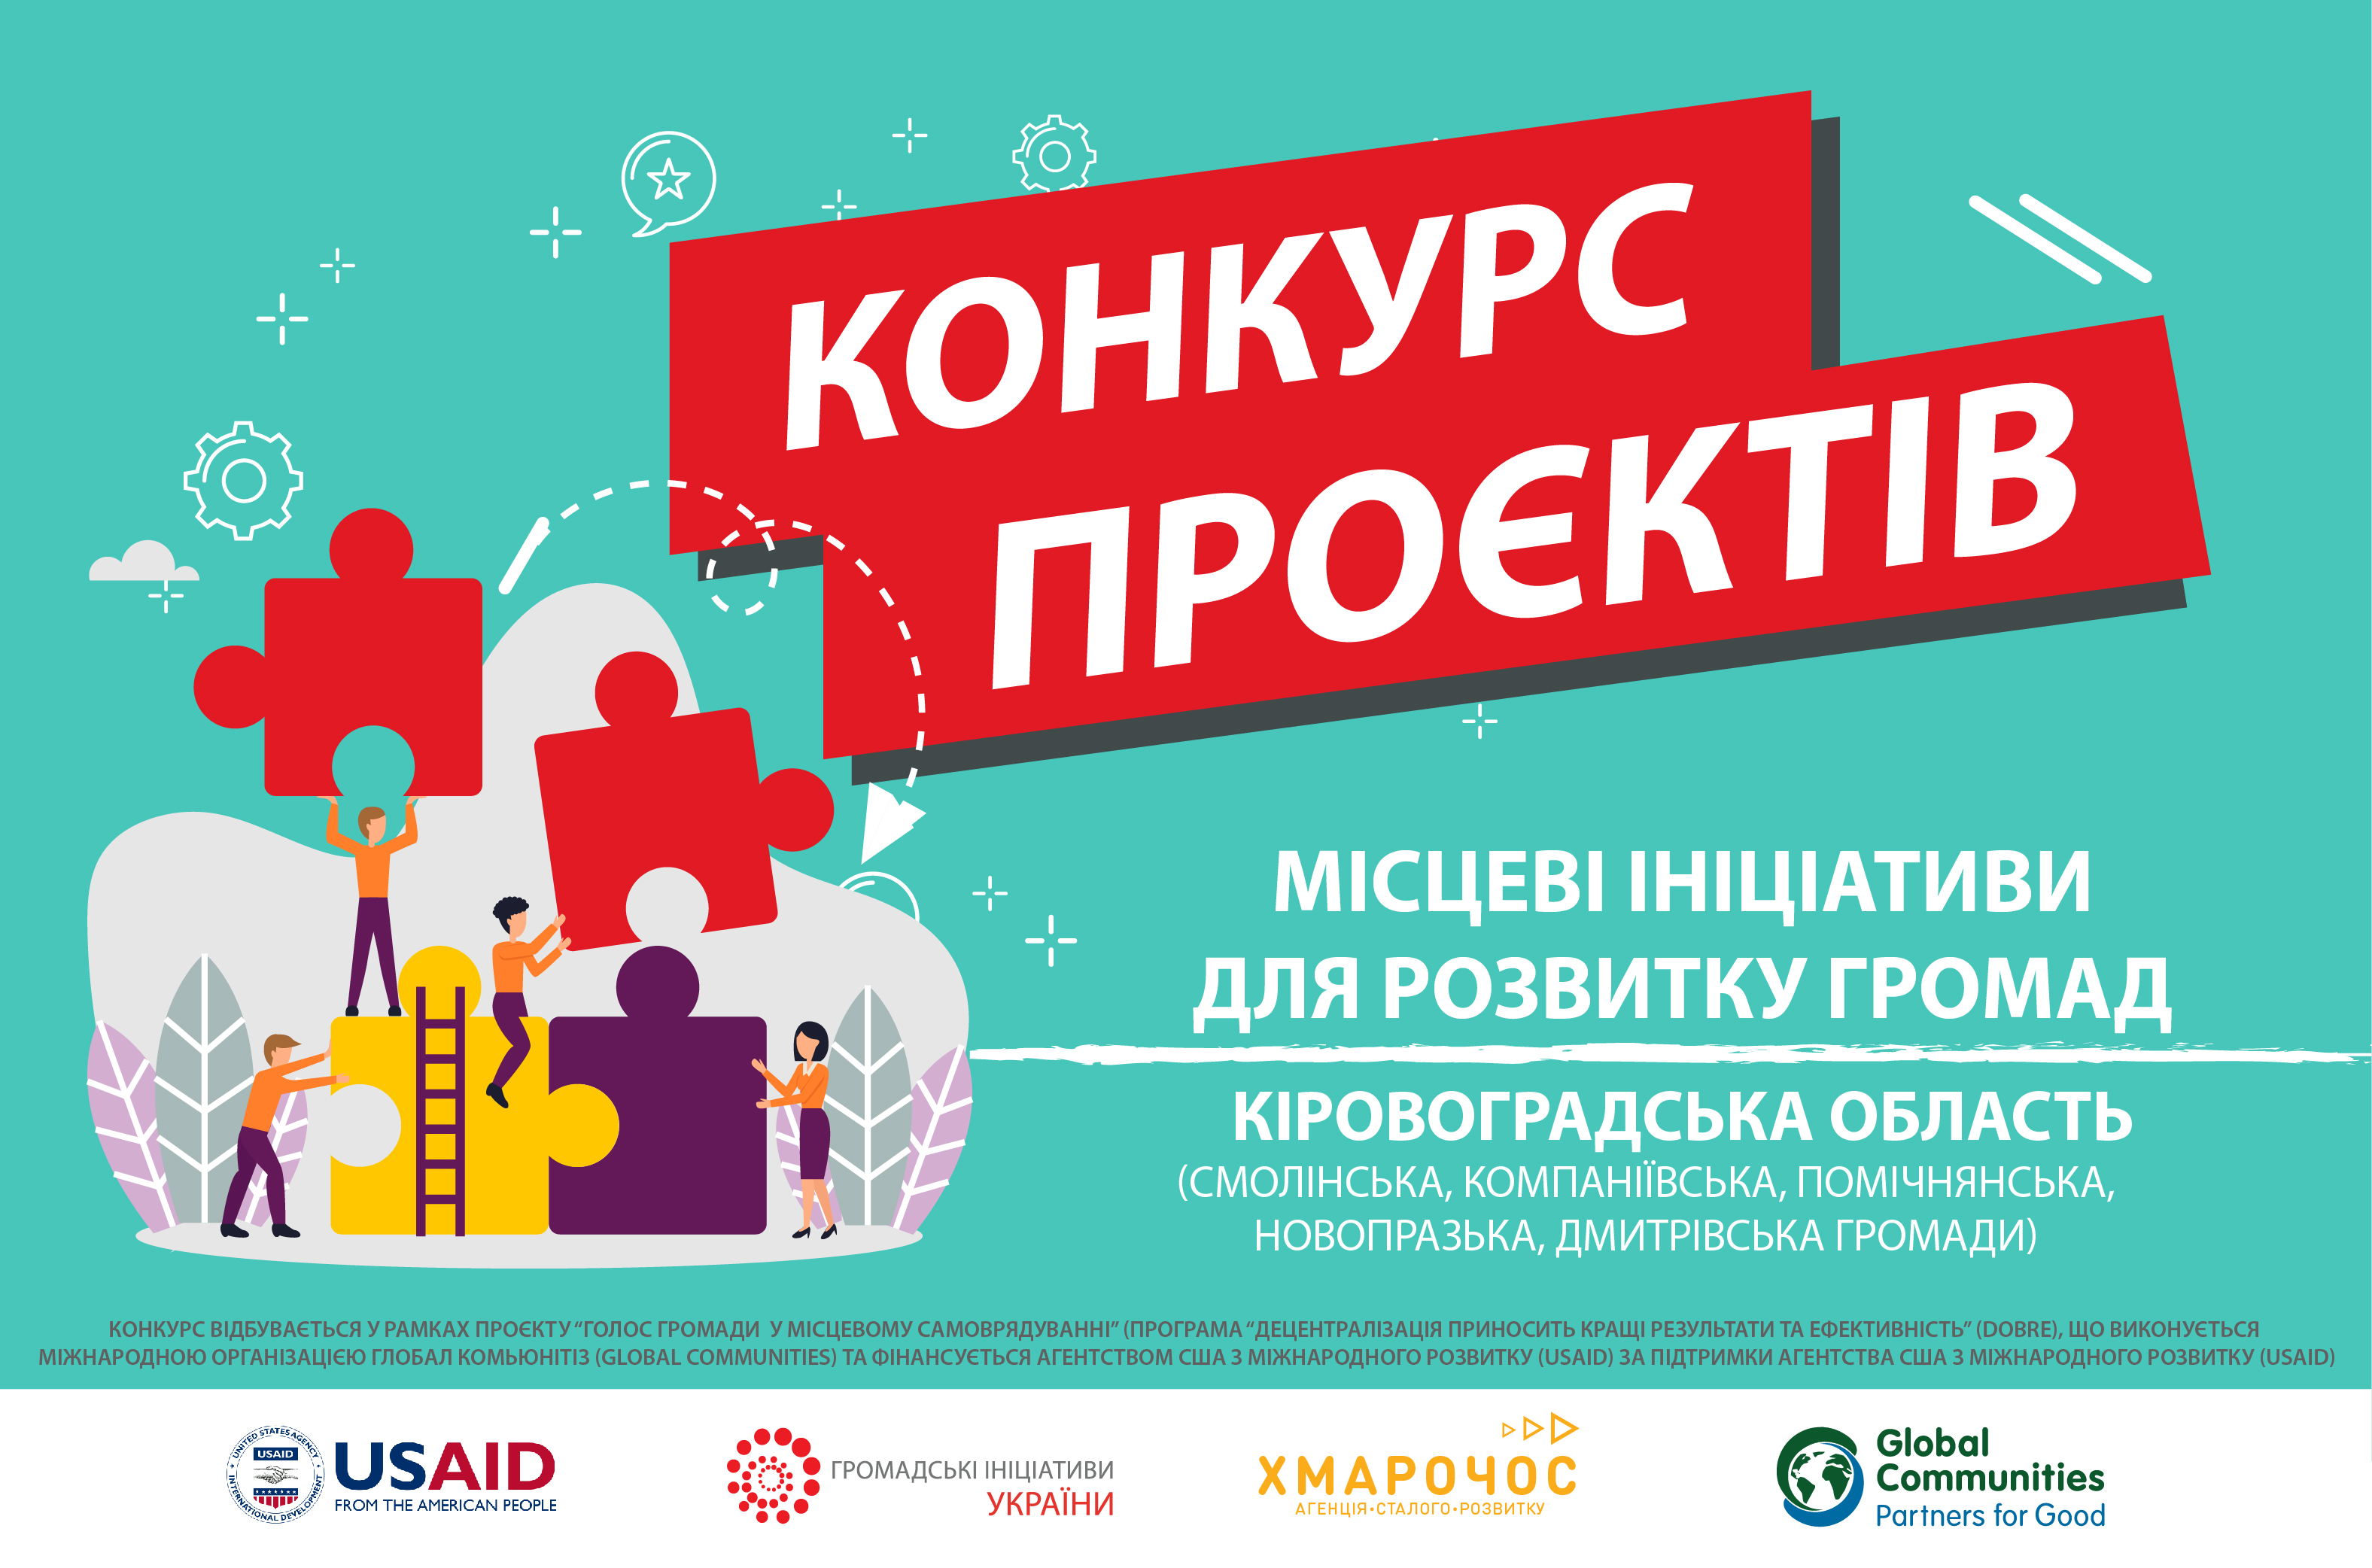  Спілка «Громадські ініціативи України» оголошує третій конкурс проектів «Місцеві ініціативи для розвитку громад» у Кіровоградській області